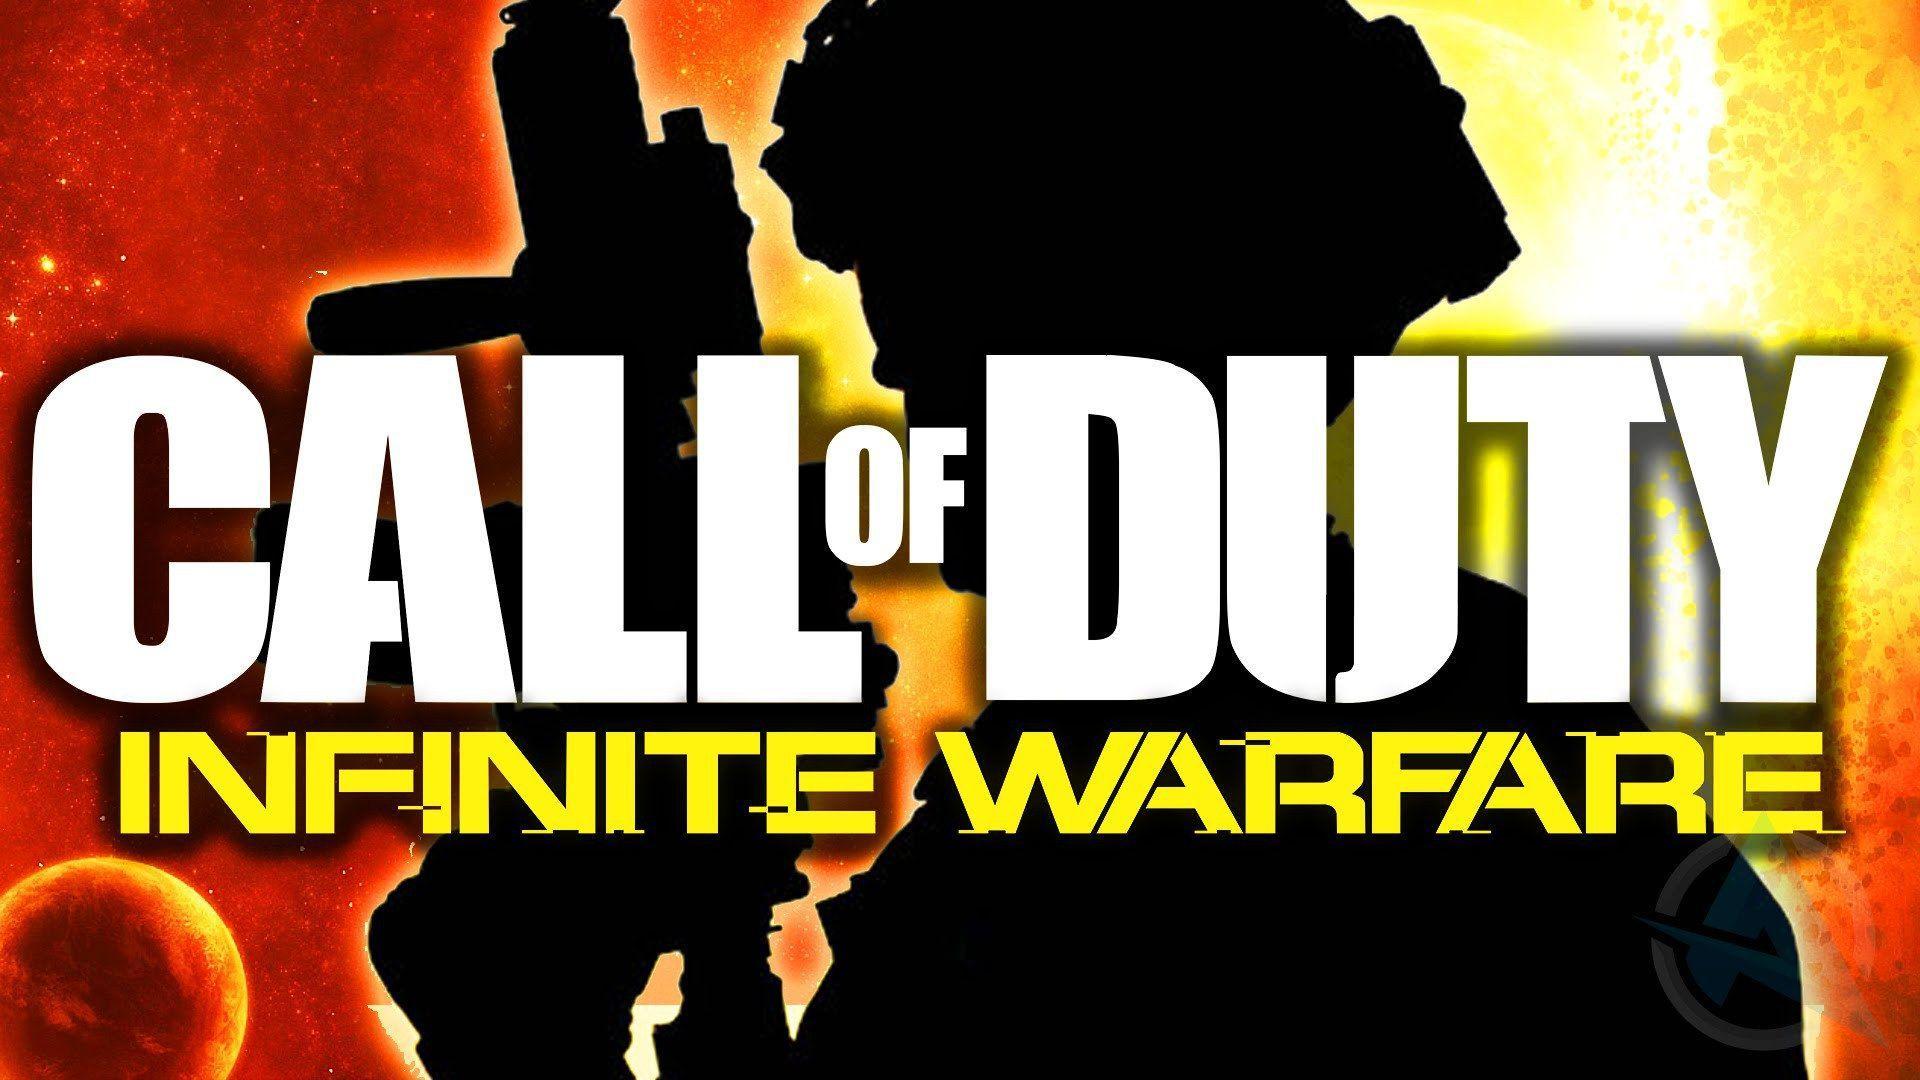 Call of Duty: Infinite Warfare Wallpaper Image Photo Picture